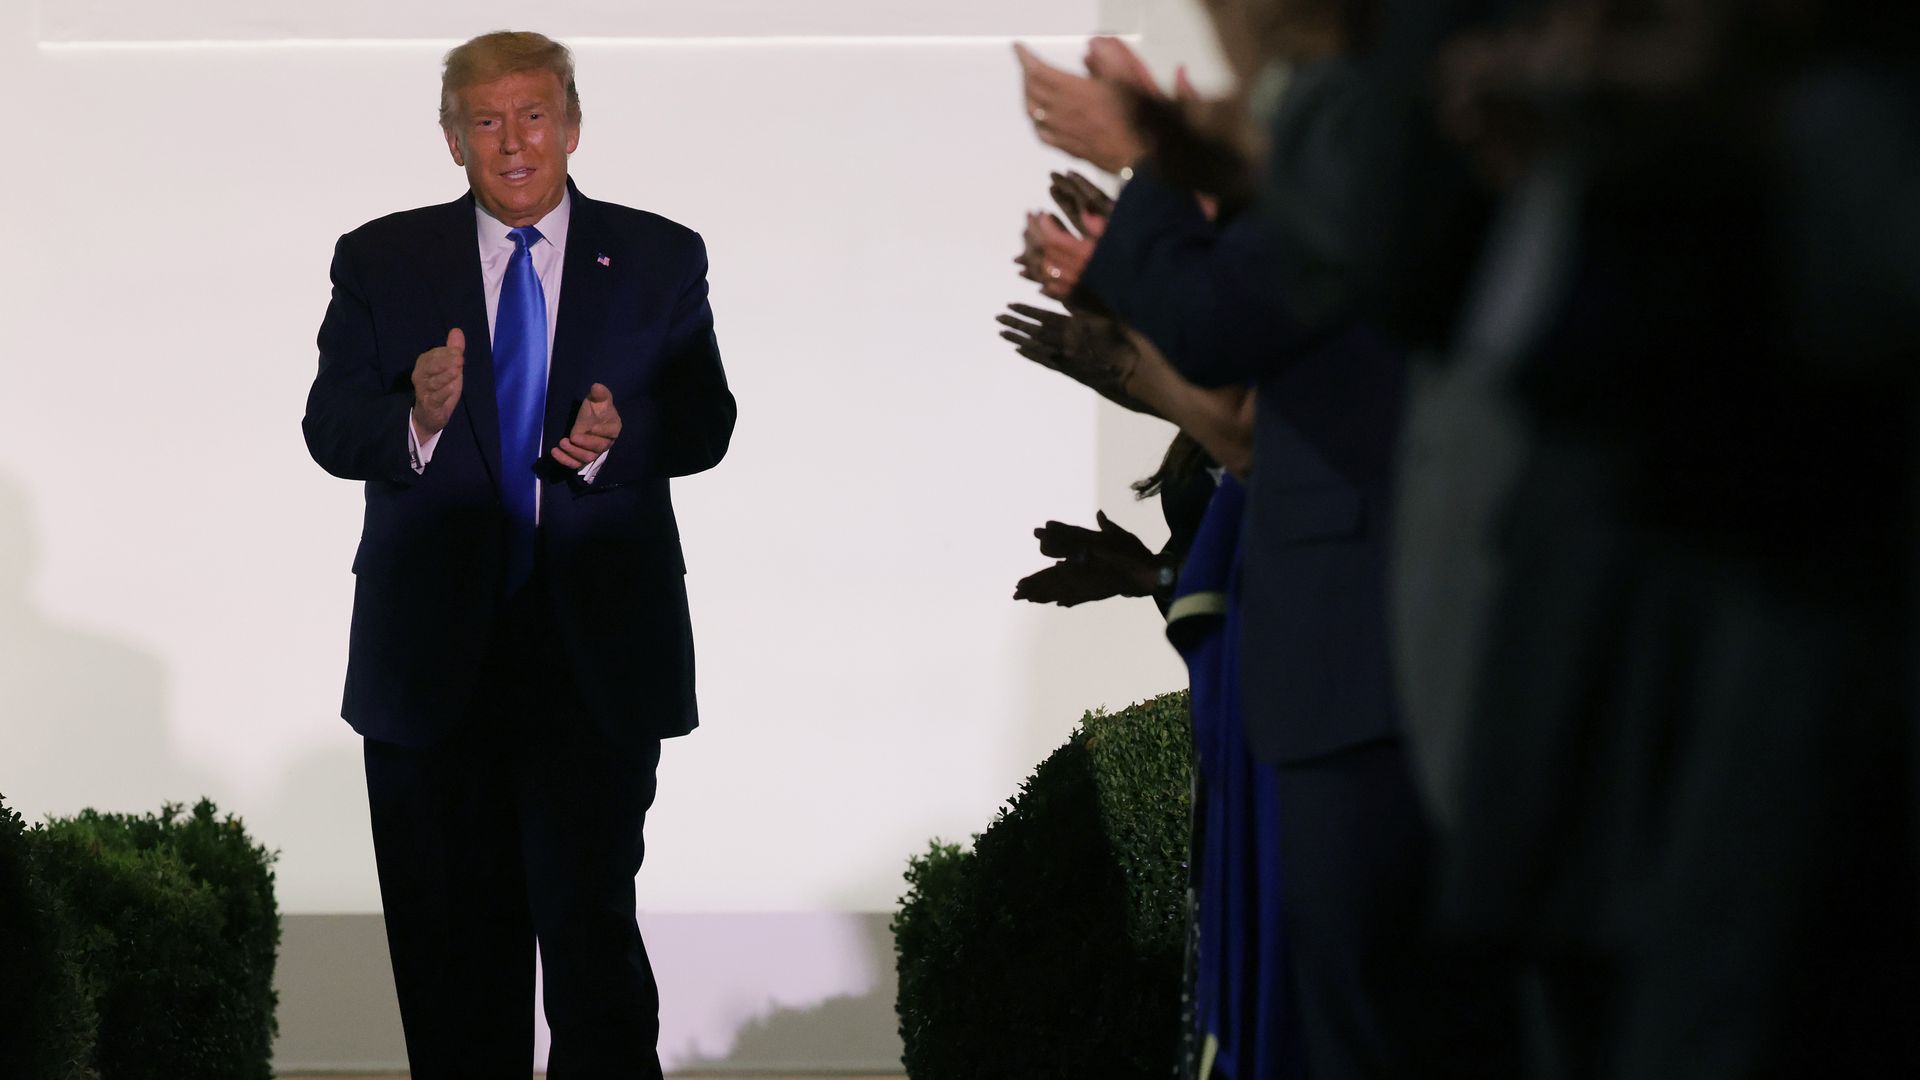 Trump being applauded in Rose Garden